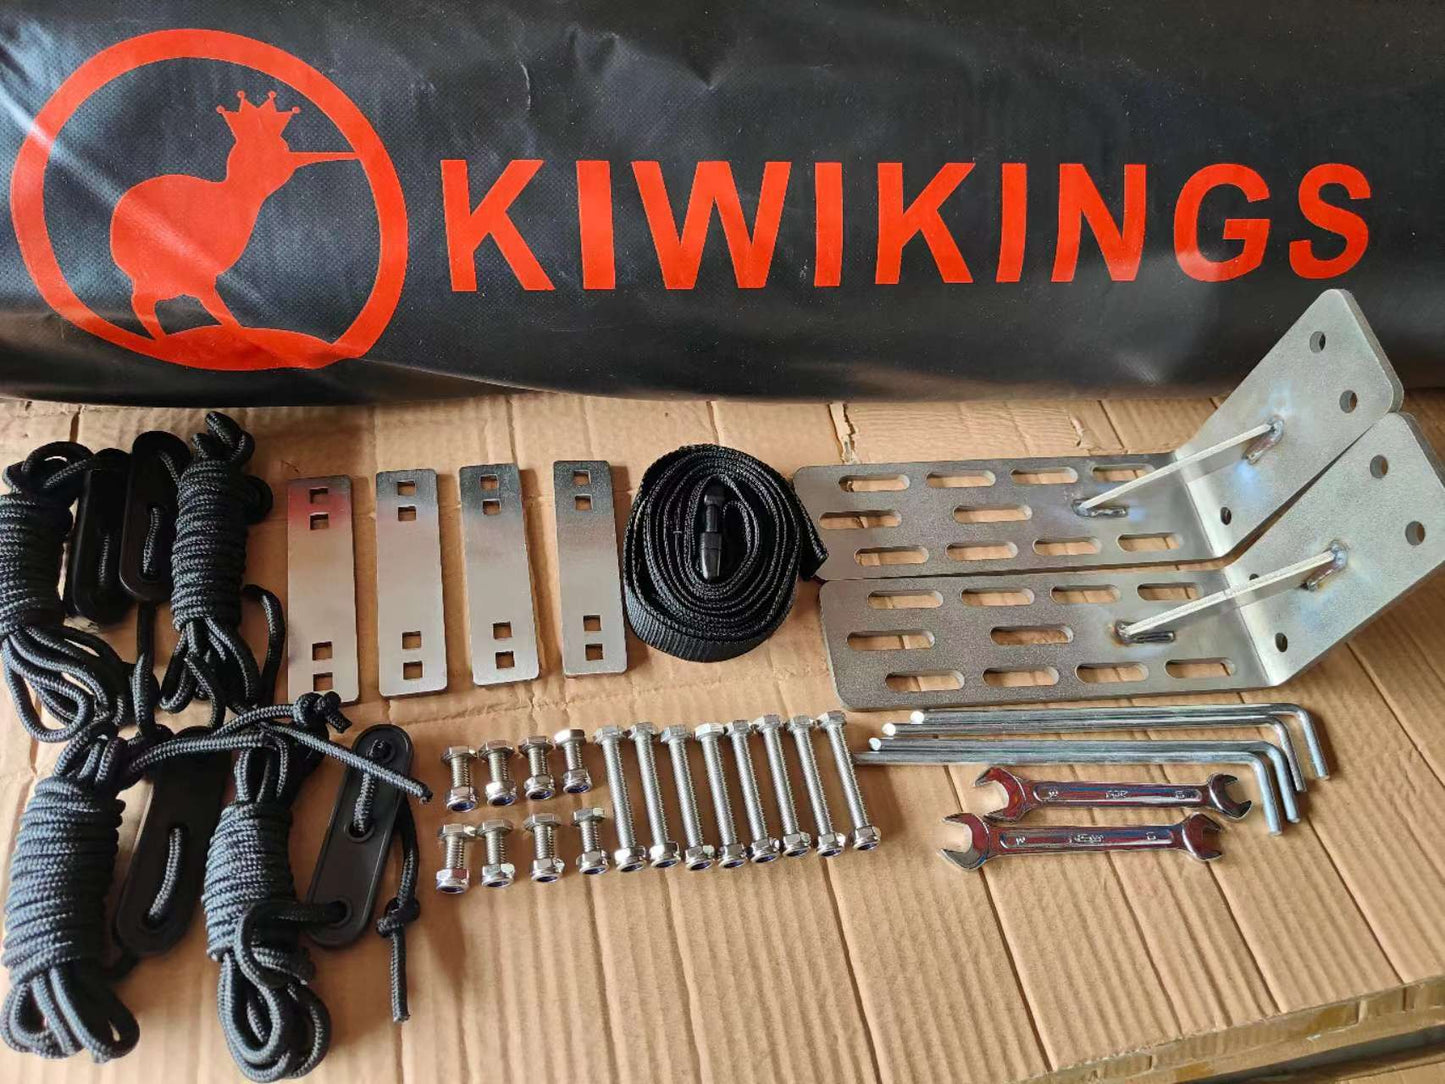 KIWIKINGS normal 270  awning (KN270-2.0/2.0PLUS/2.5)